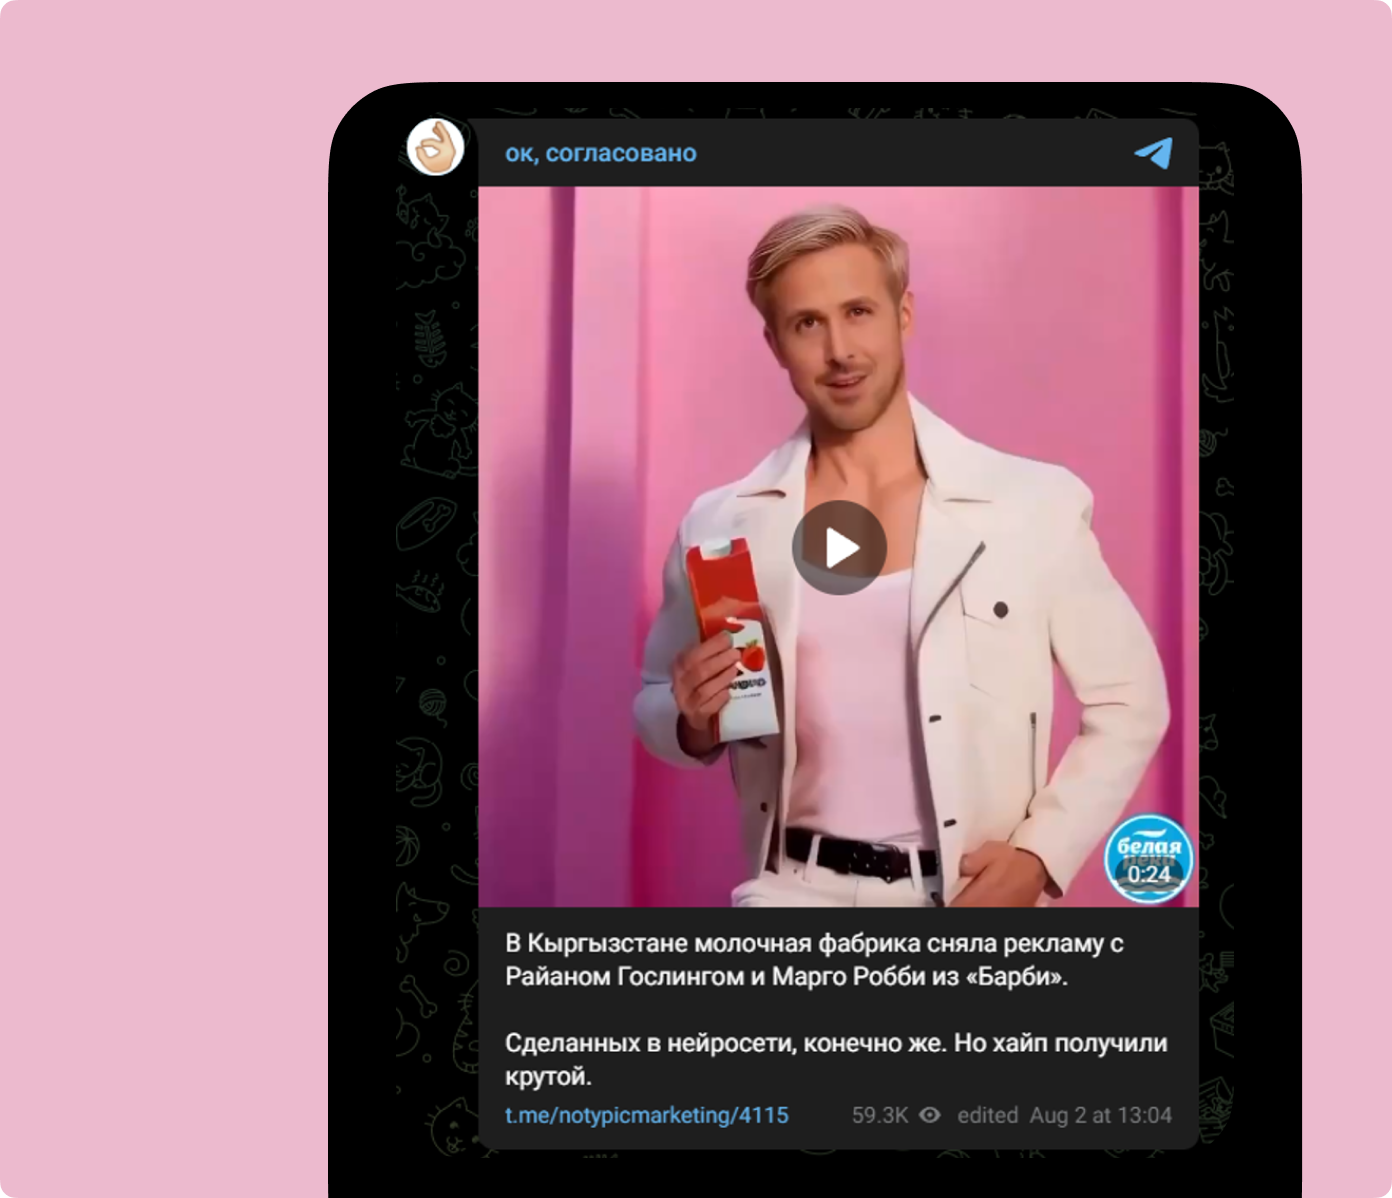 Кыргызстанская молочная фабрика успела хайпануть на теме Барби, выпустив рекламный ролик с Марго Робби и Райаном Гослингом, сгенерированными в нейросети